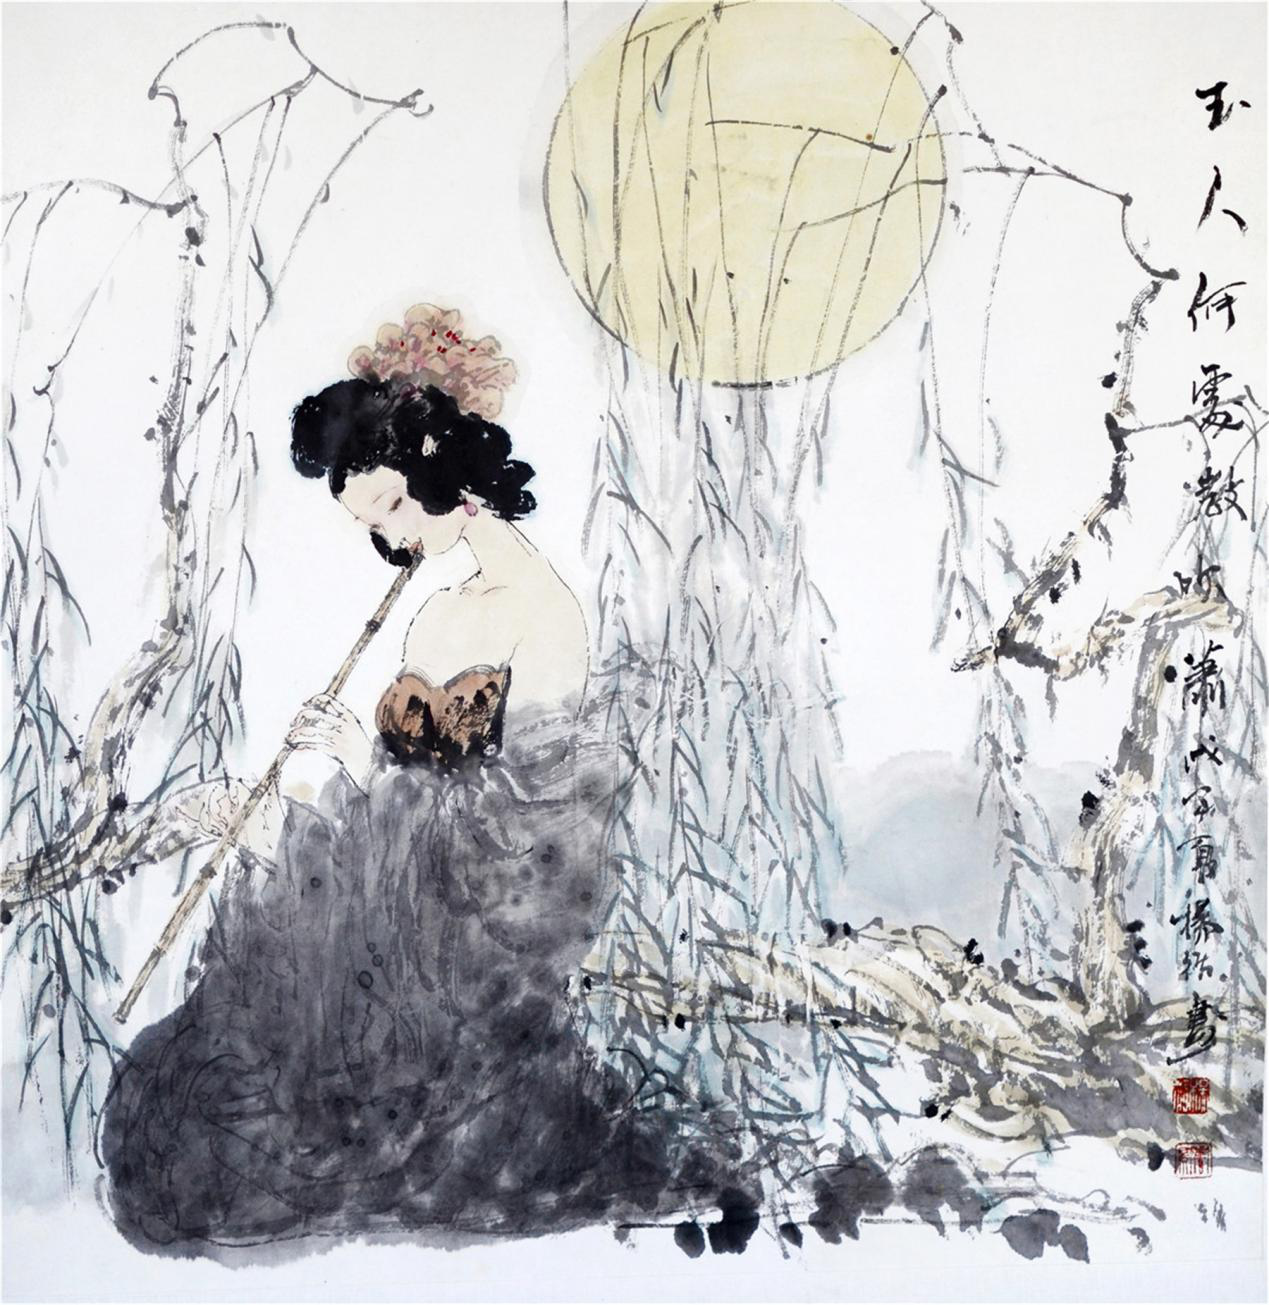 翰墨情缘绘出风采杨循的人物画艺术